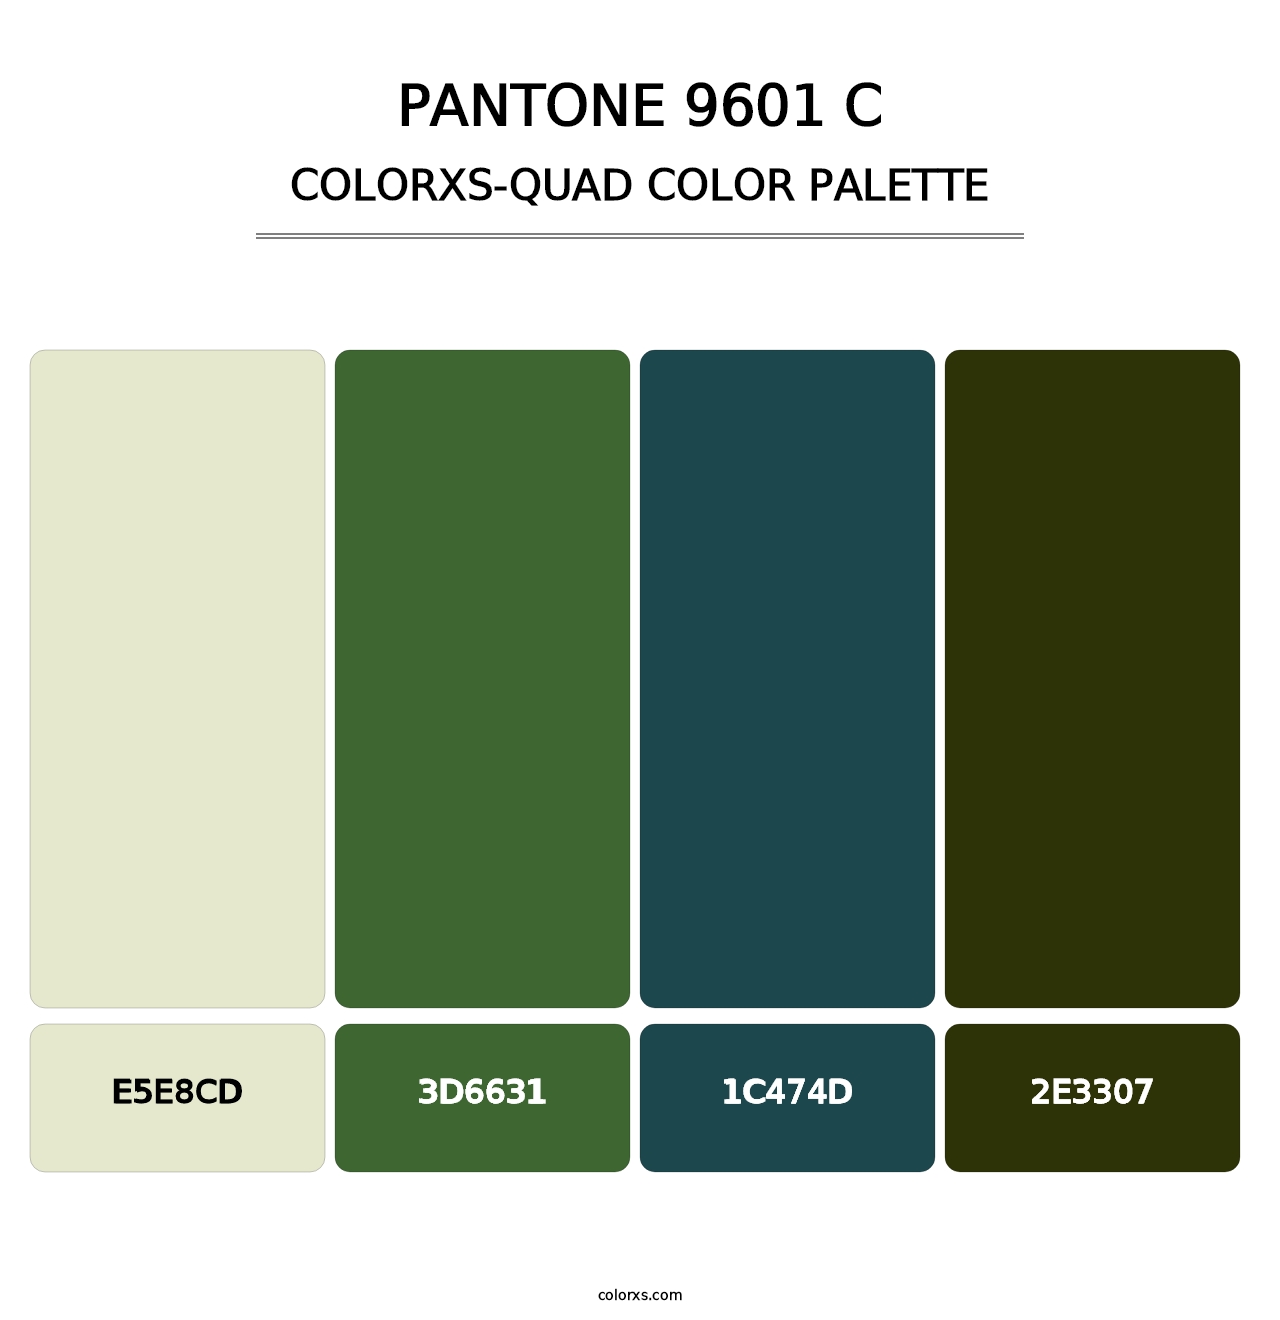 PANTONE 9601 C - Colorxs Quad Palette